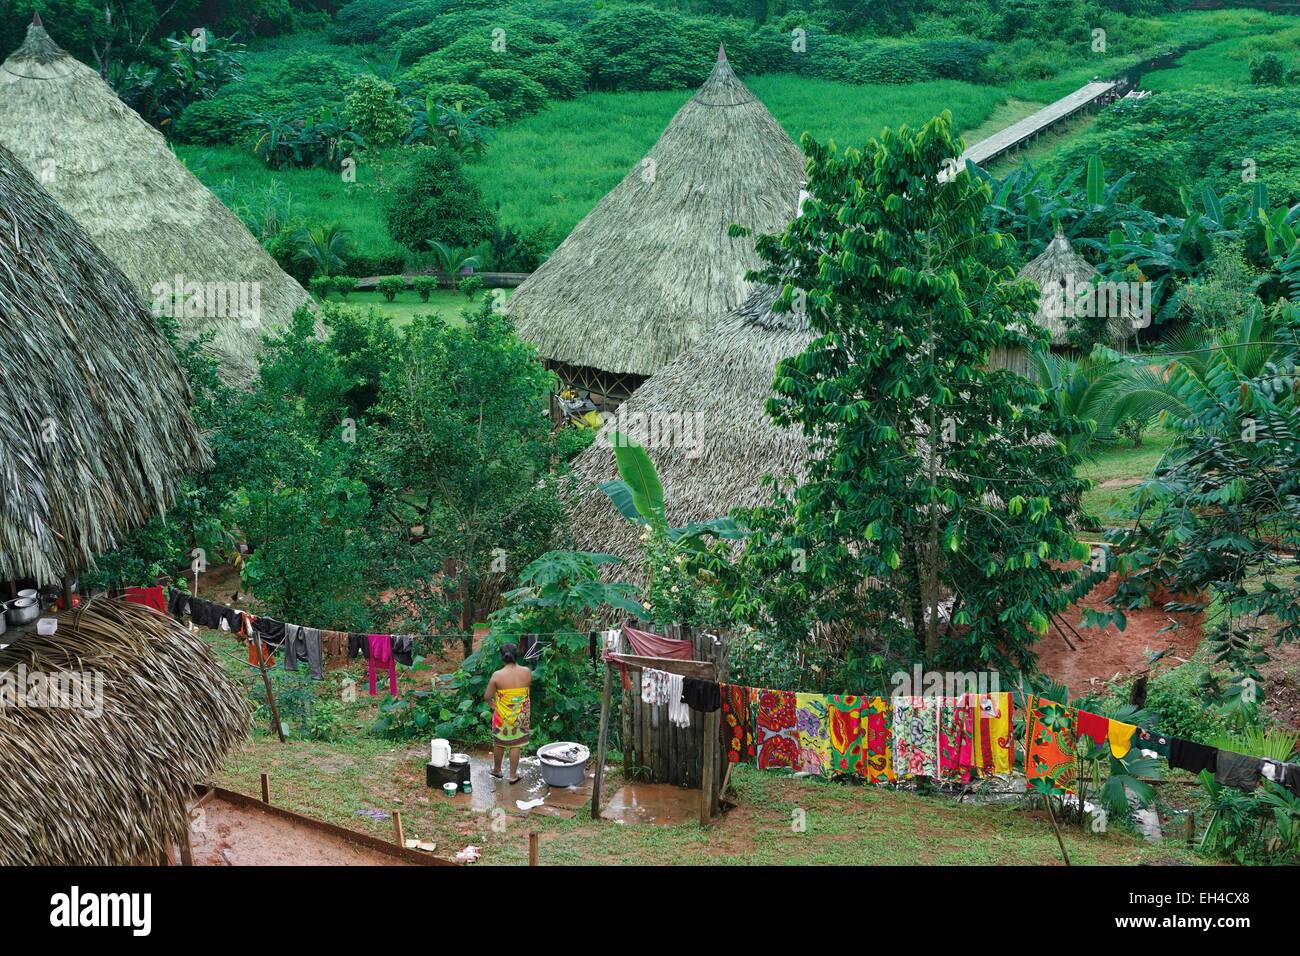 Panama, provincia di Darien, Parco Nazionale del Darién, classificato come patrimonio mondiale dall UNESCO, Embera comunità indigena, giovane donna nel mezzo di un tradizionale villaggio Embera in una vegetazione tropicale e lussureggiante ambiente Foto Stock